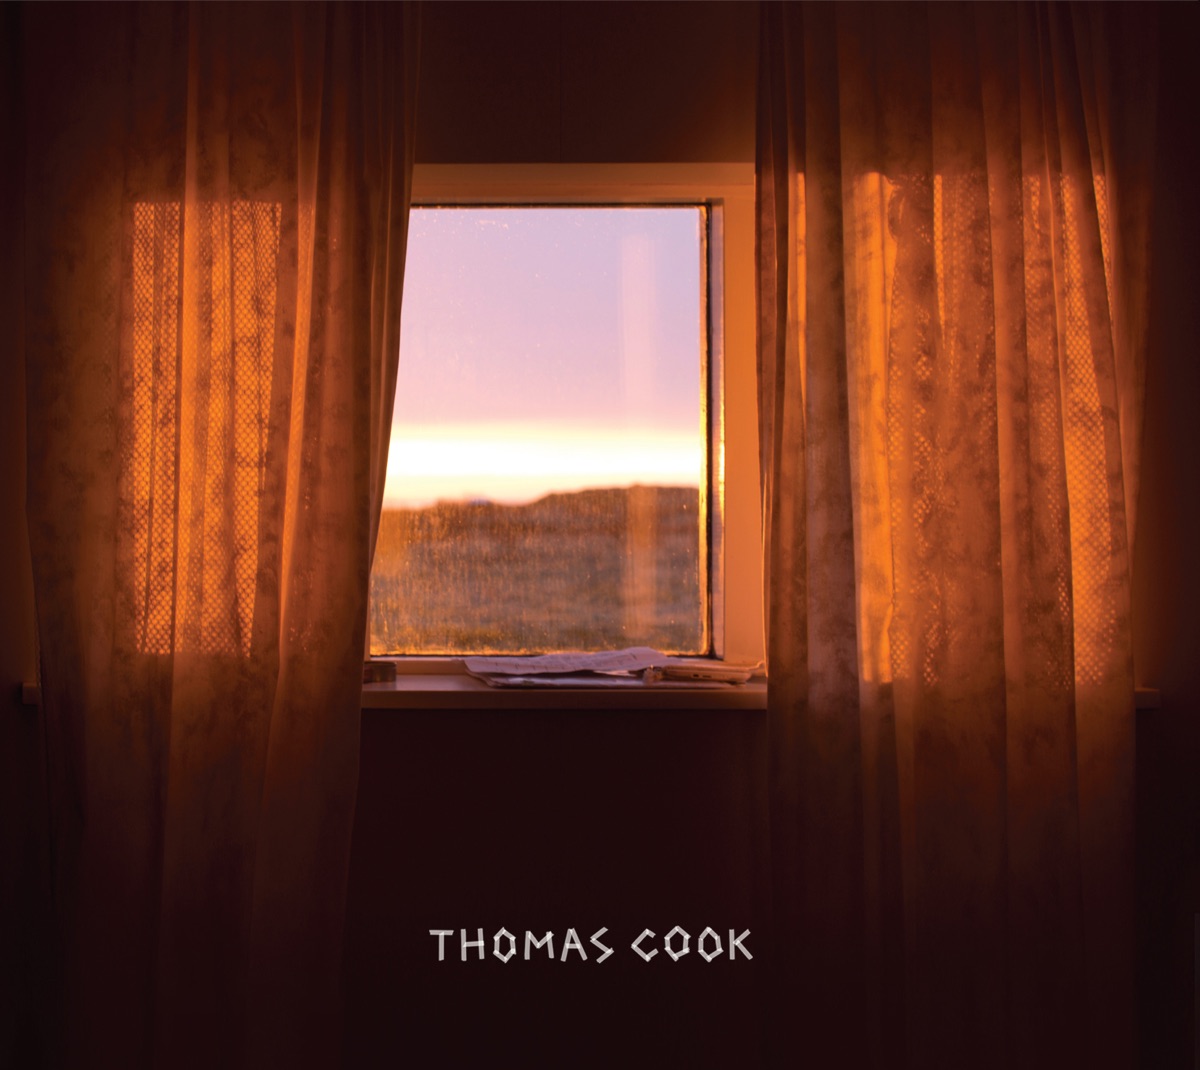 THOMAS COOK – THOMAS COOK